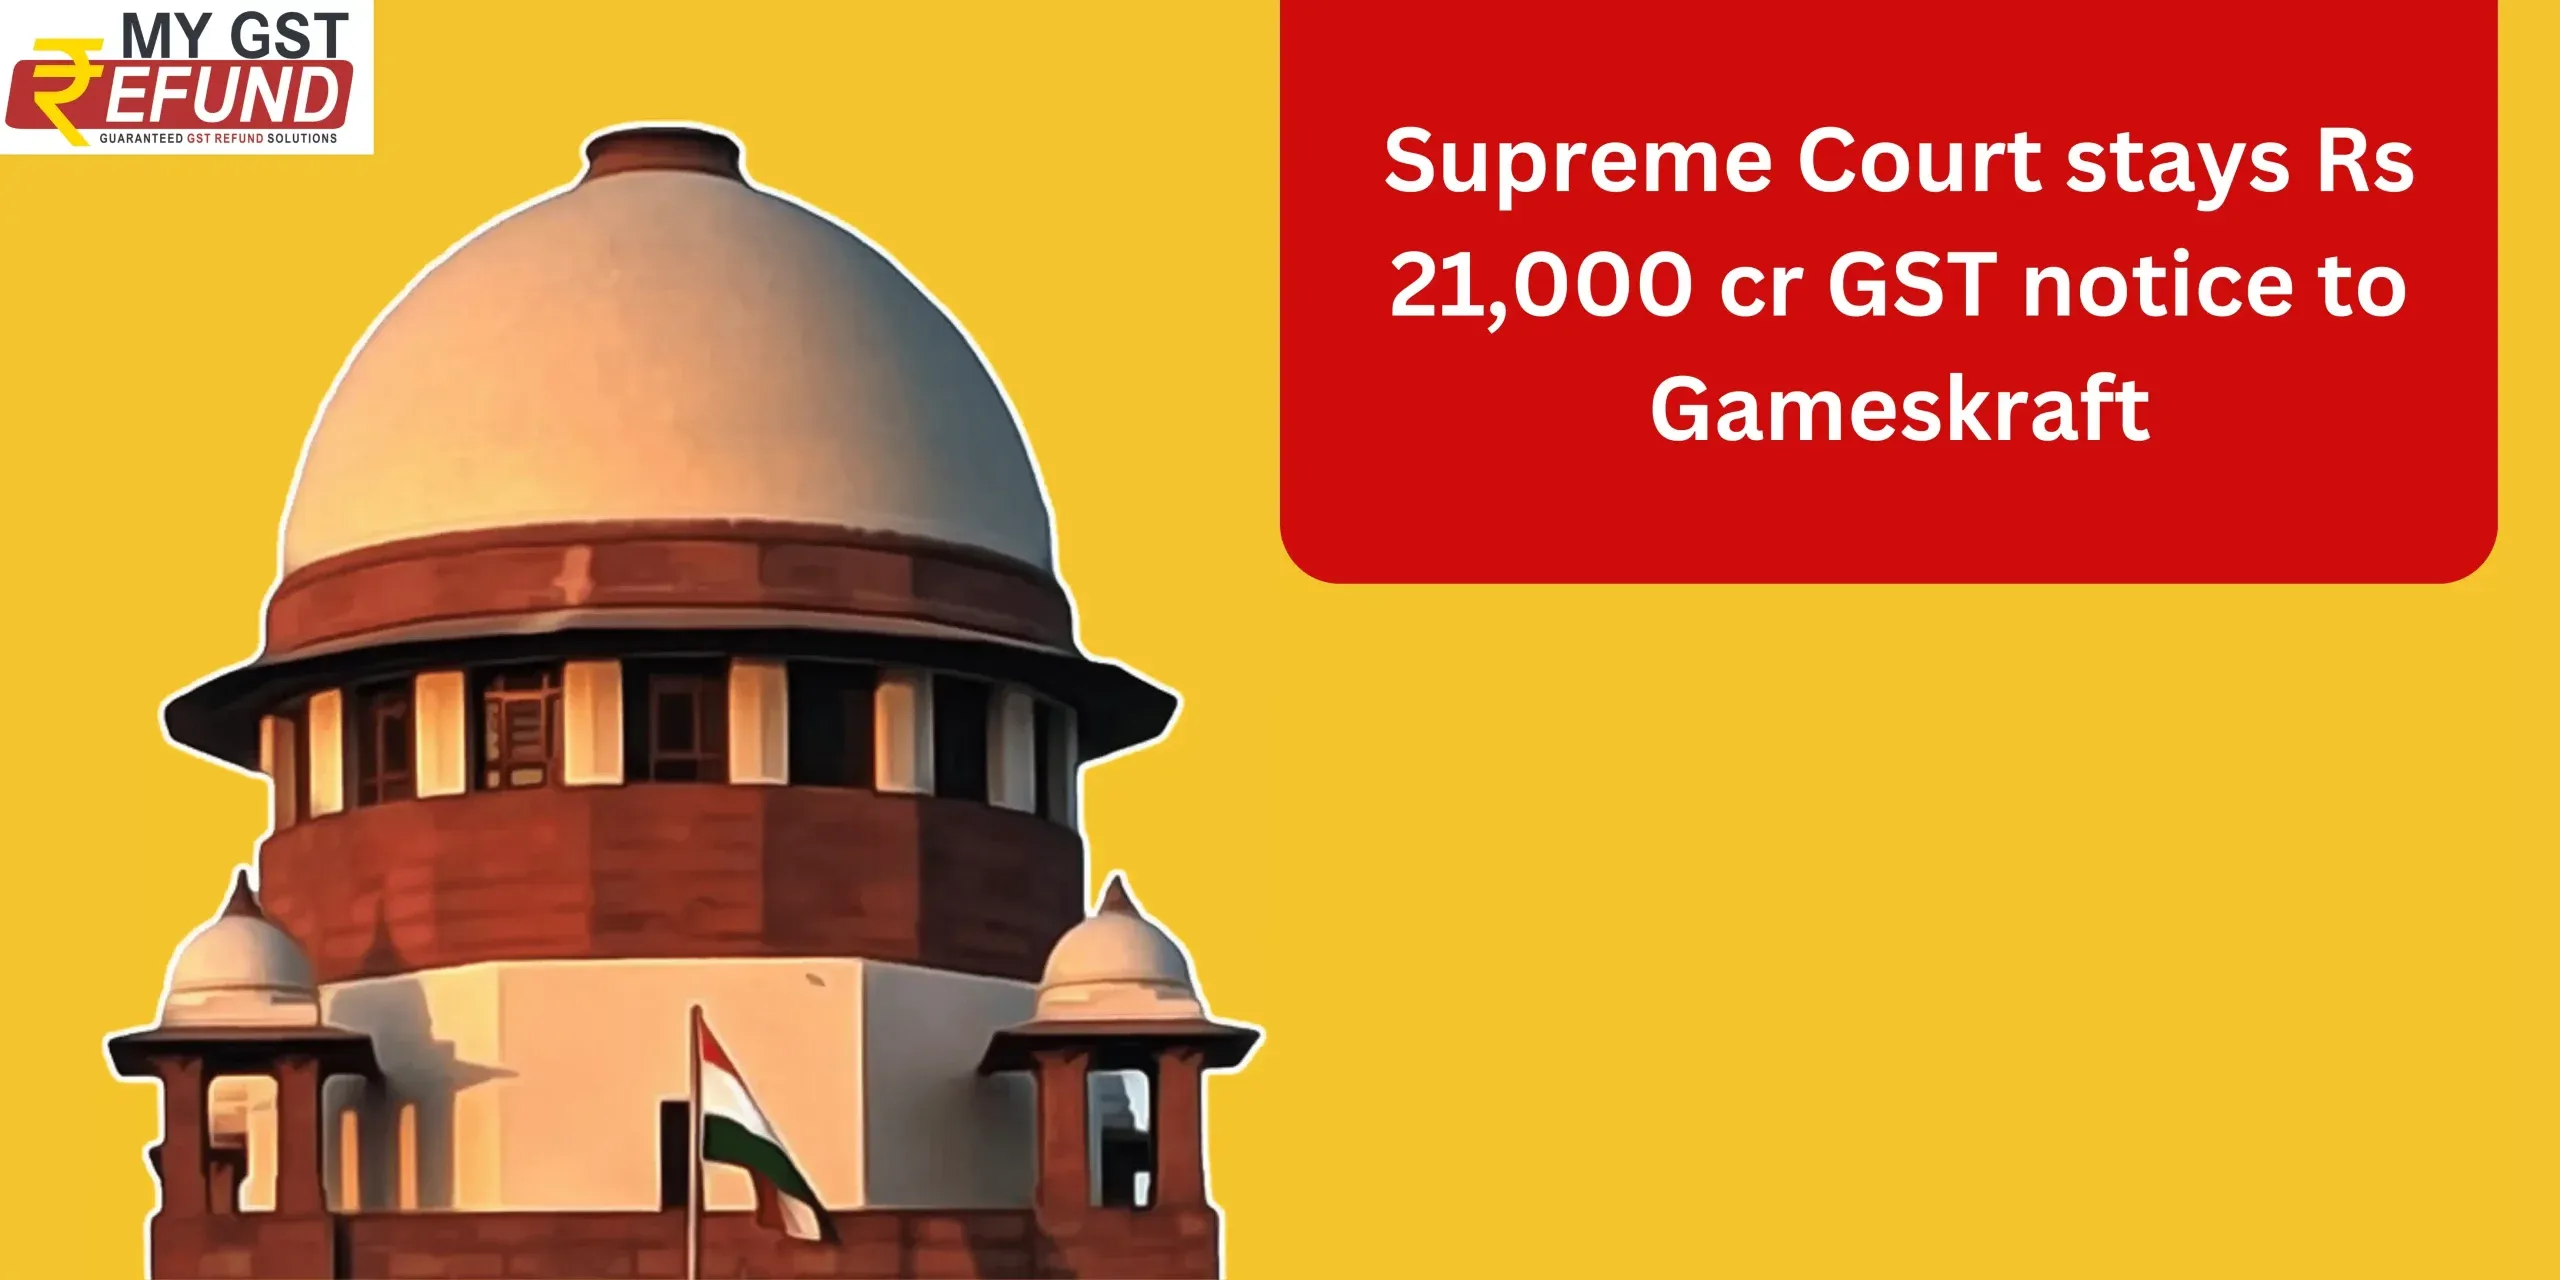 Supreme Court stays Rs 21,000 cr GST notice to Gameskraft